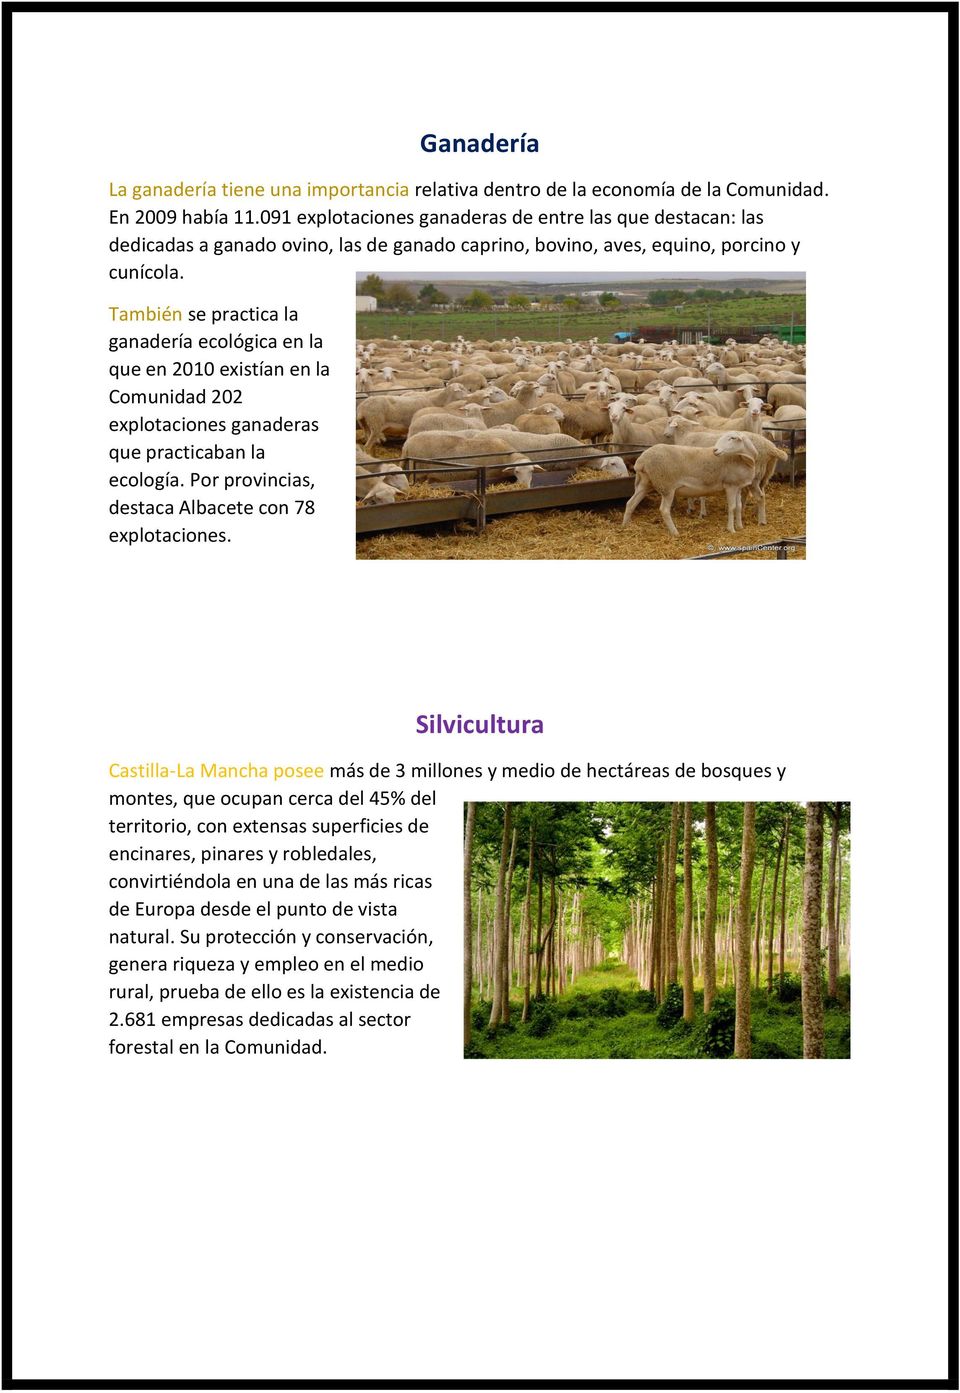 También se practica la ganadería ecológica en la que en 2010 existían en la Comunidad 202 explotaciones ganaderas que practicaban la ecología. Por provincias, destaca Albacete con 78 explotaciones.